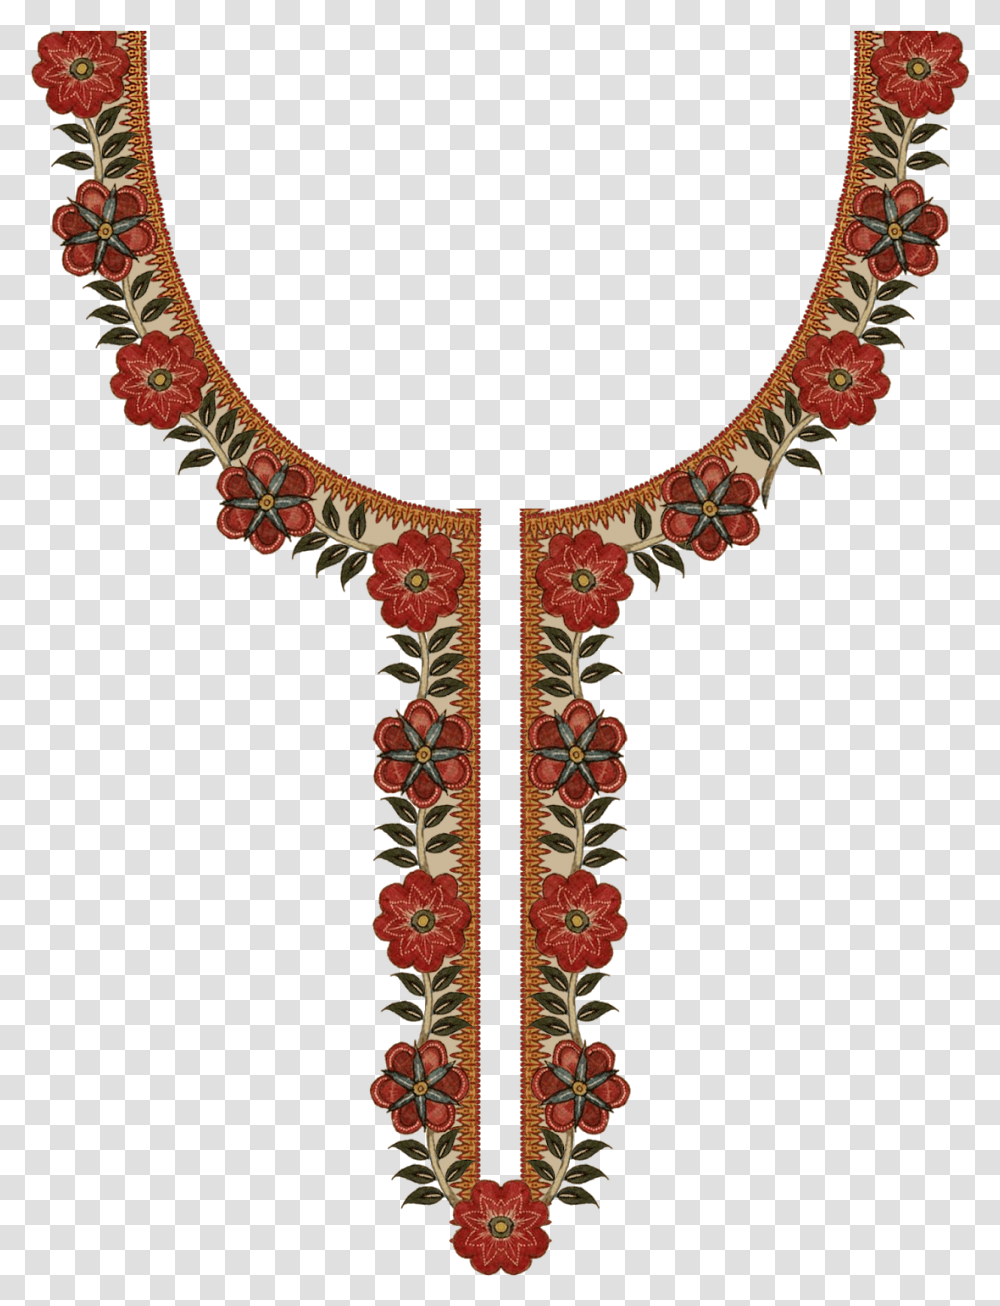 Digital Ladies Dress Pattern Textile Design Print, Necklace, Accessories Transparent Png